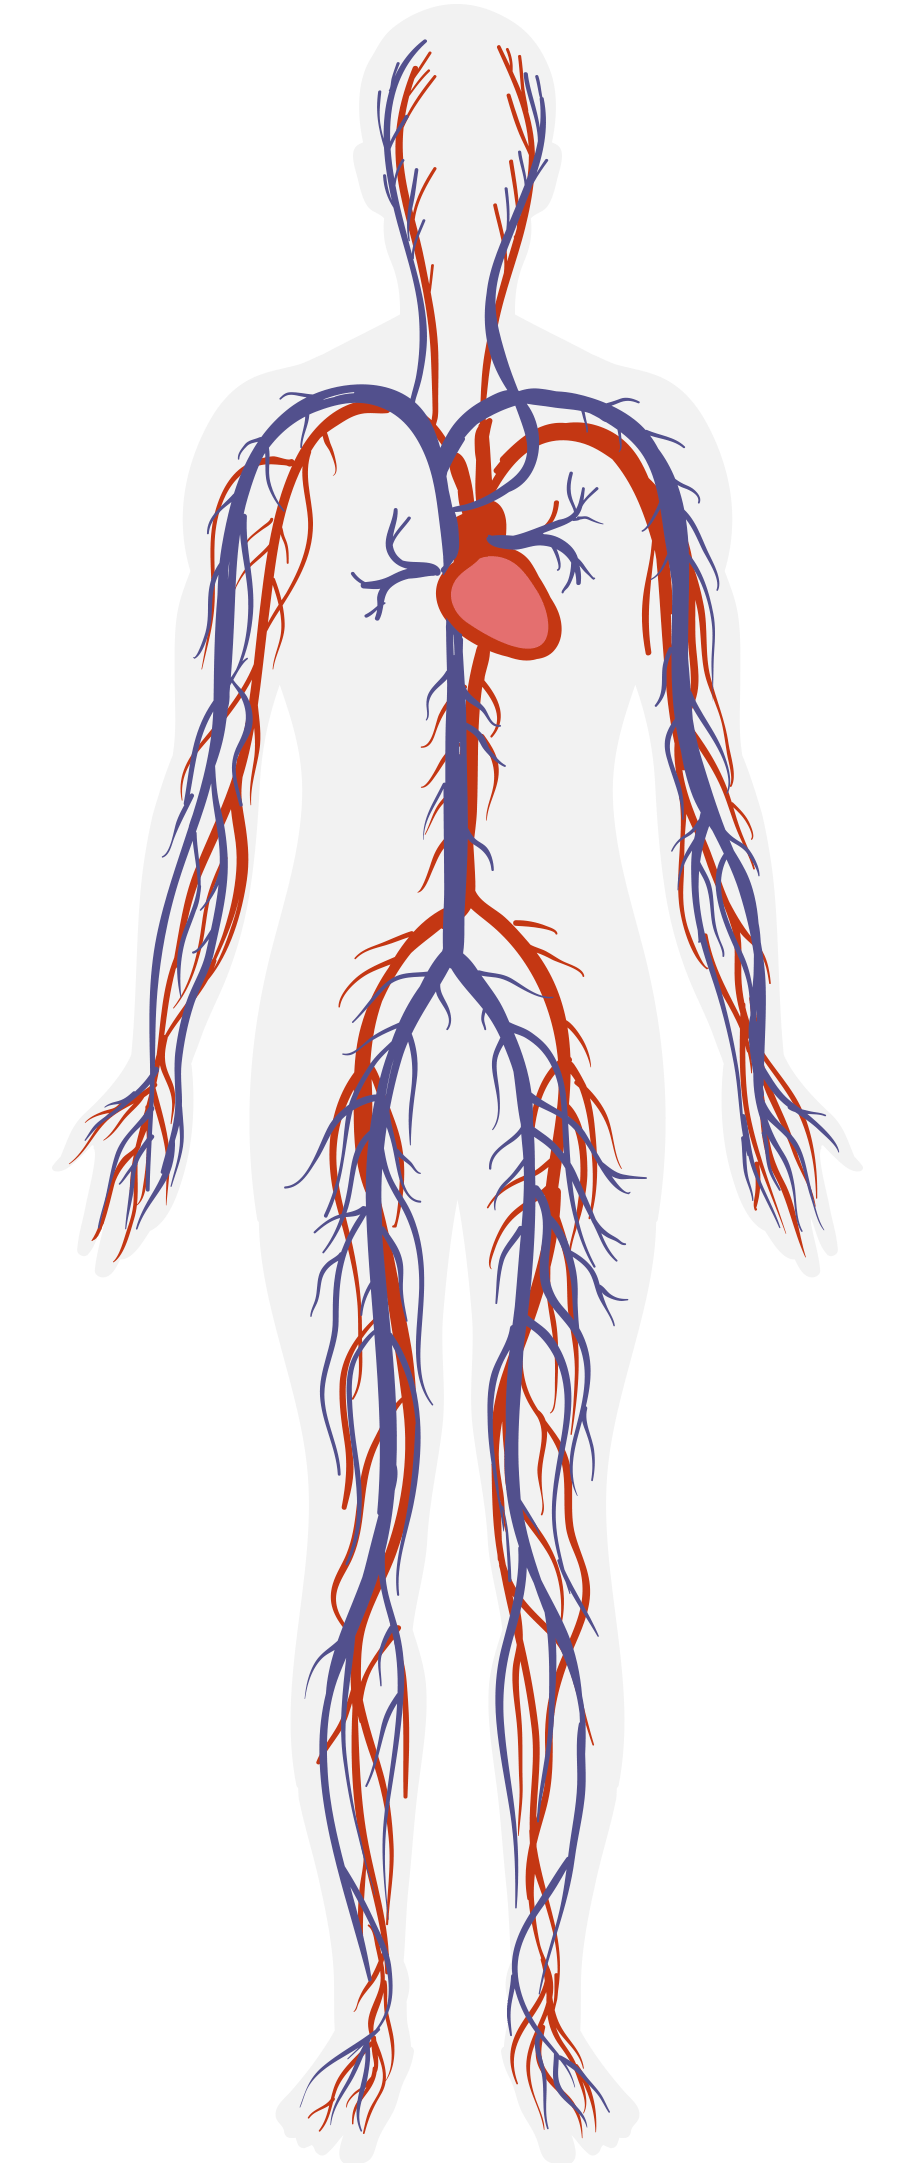 血液是生命的长河,如果将动脉,静脉,毛细血管连在一起,其总长约为10万